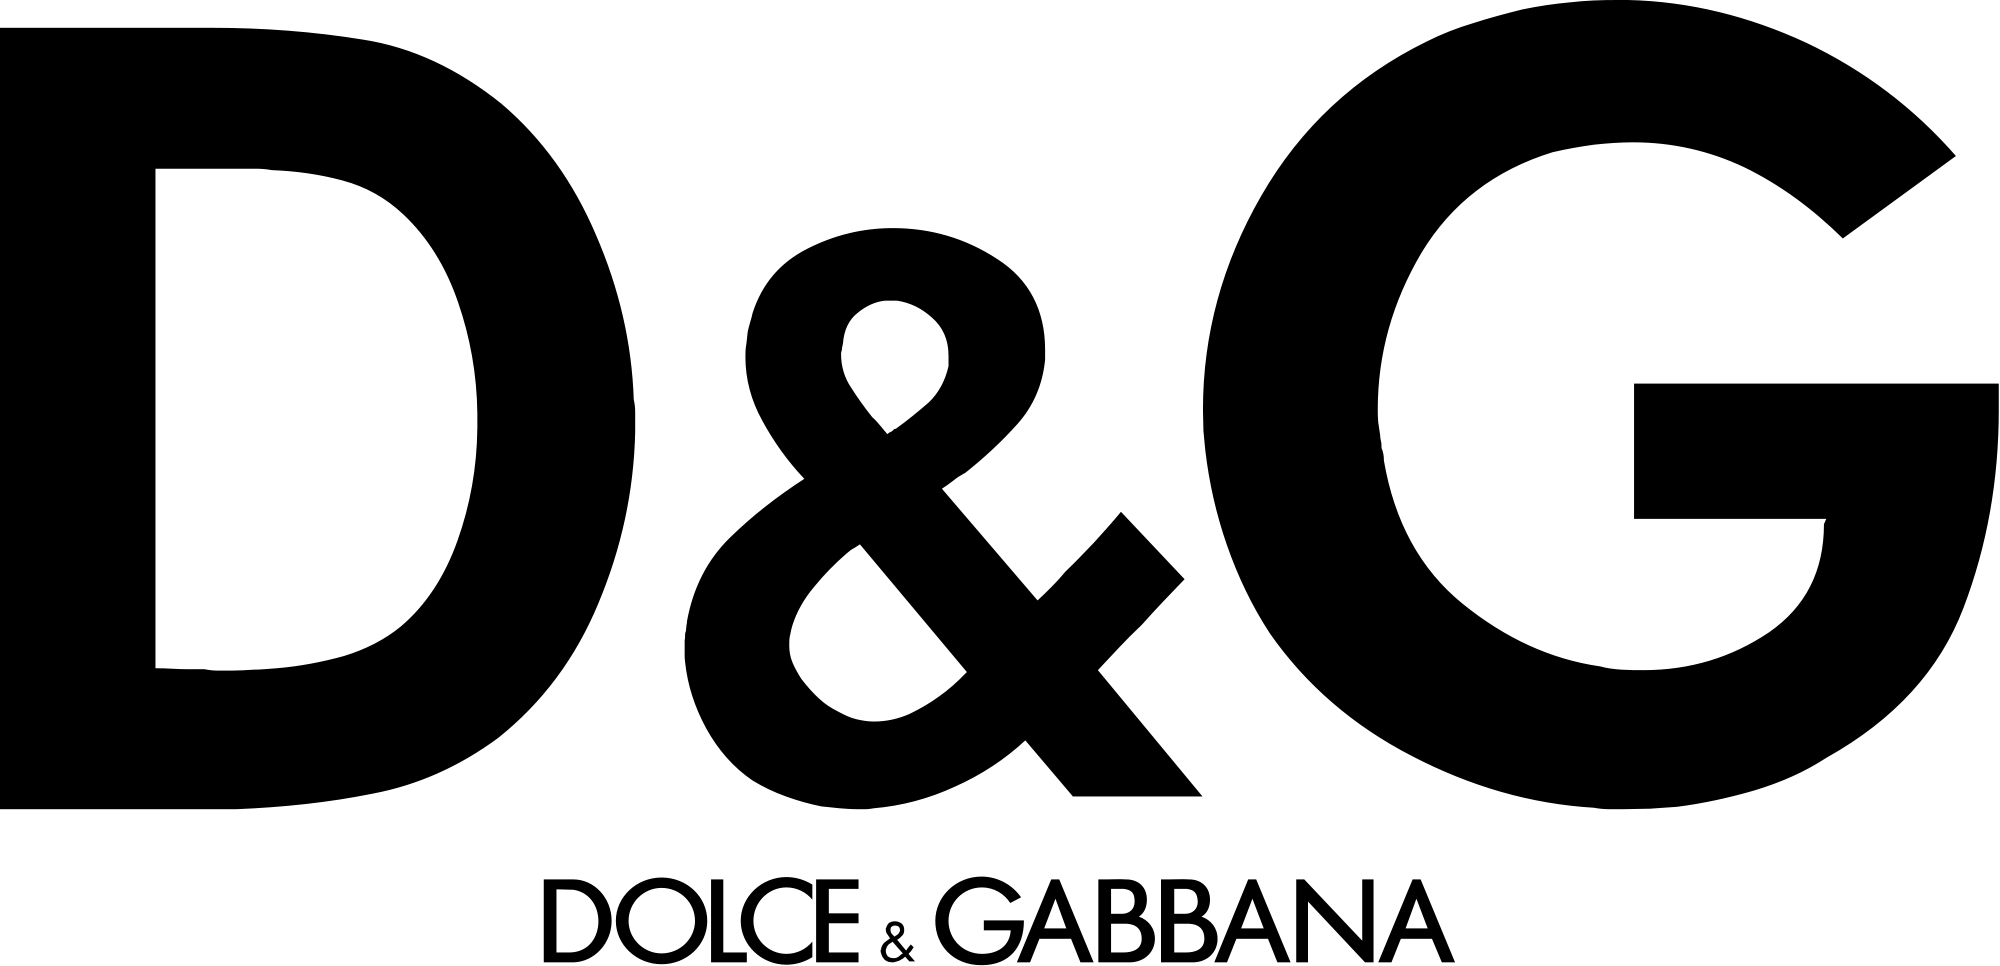 6dolce.gabbana logo.jpg